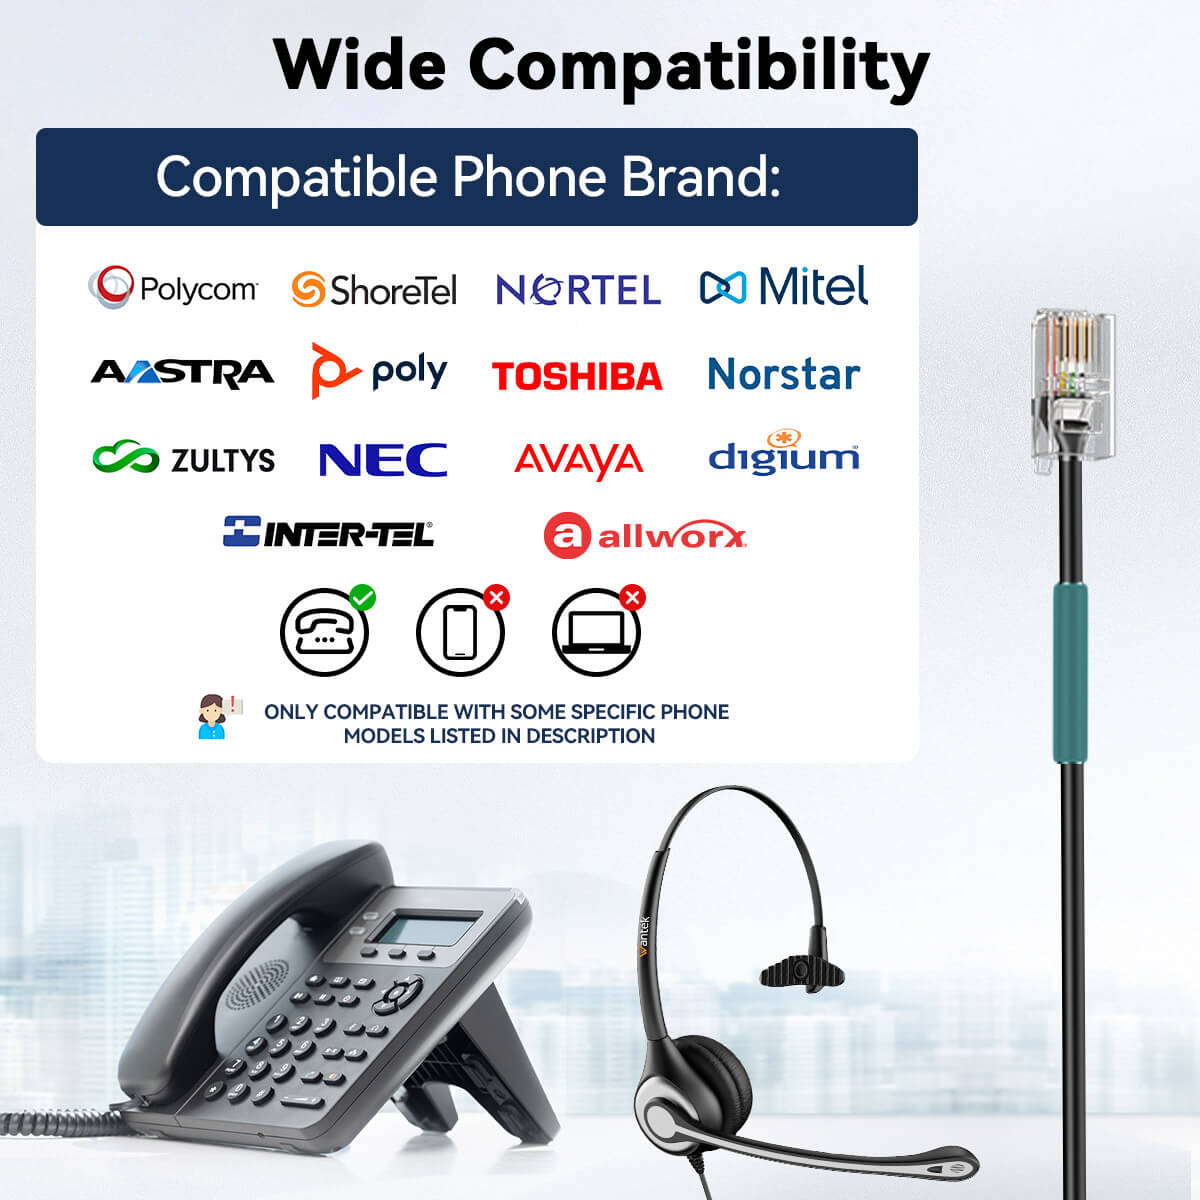 Wantek® h600 RJ9【RJ1】headst for landline phones